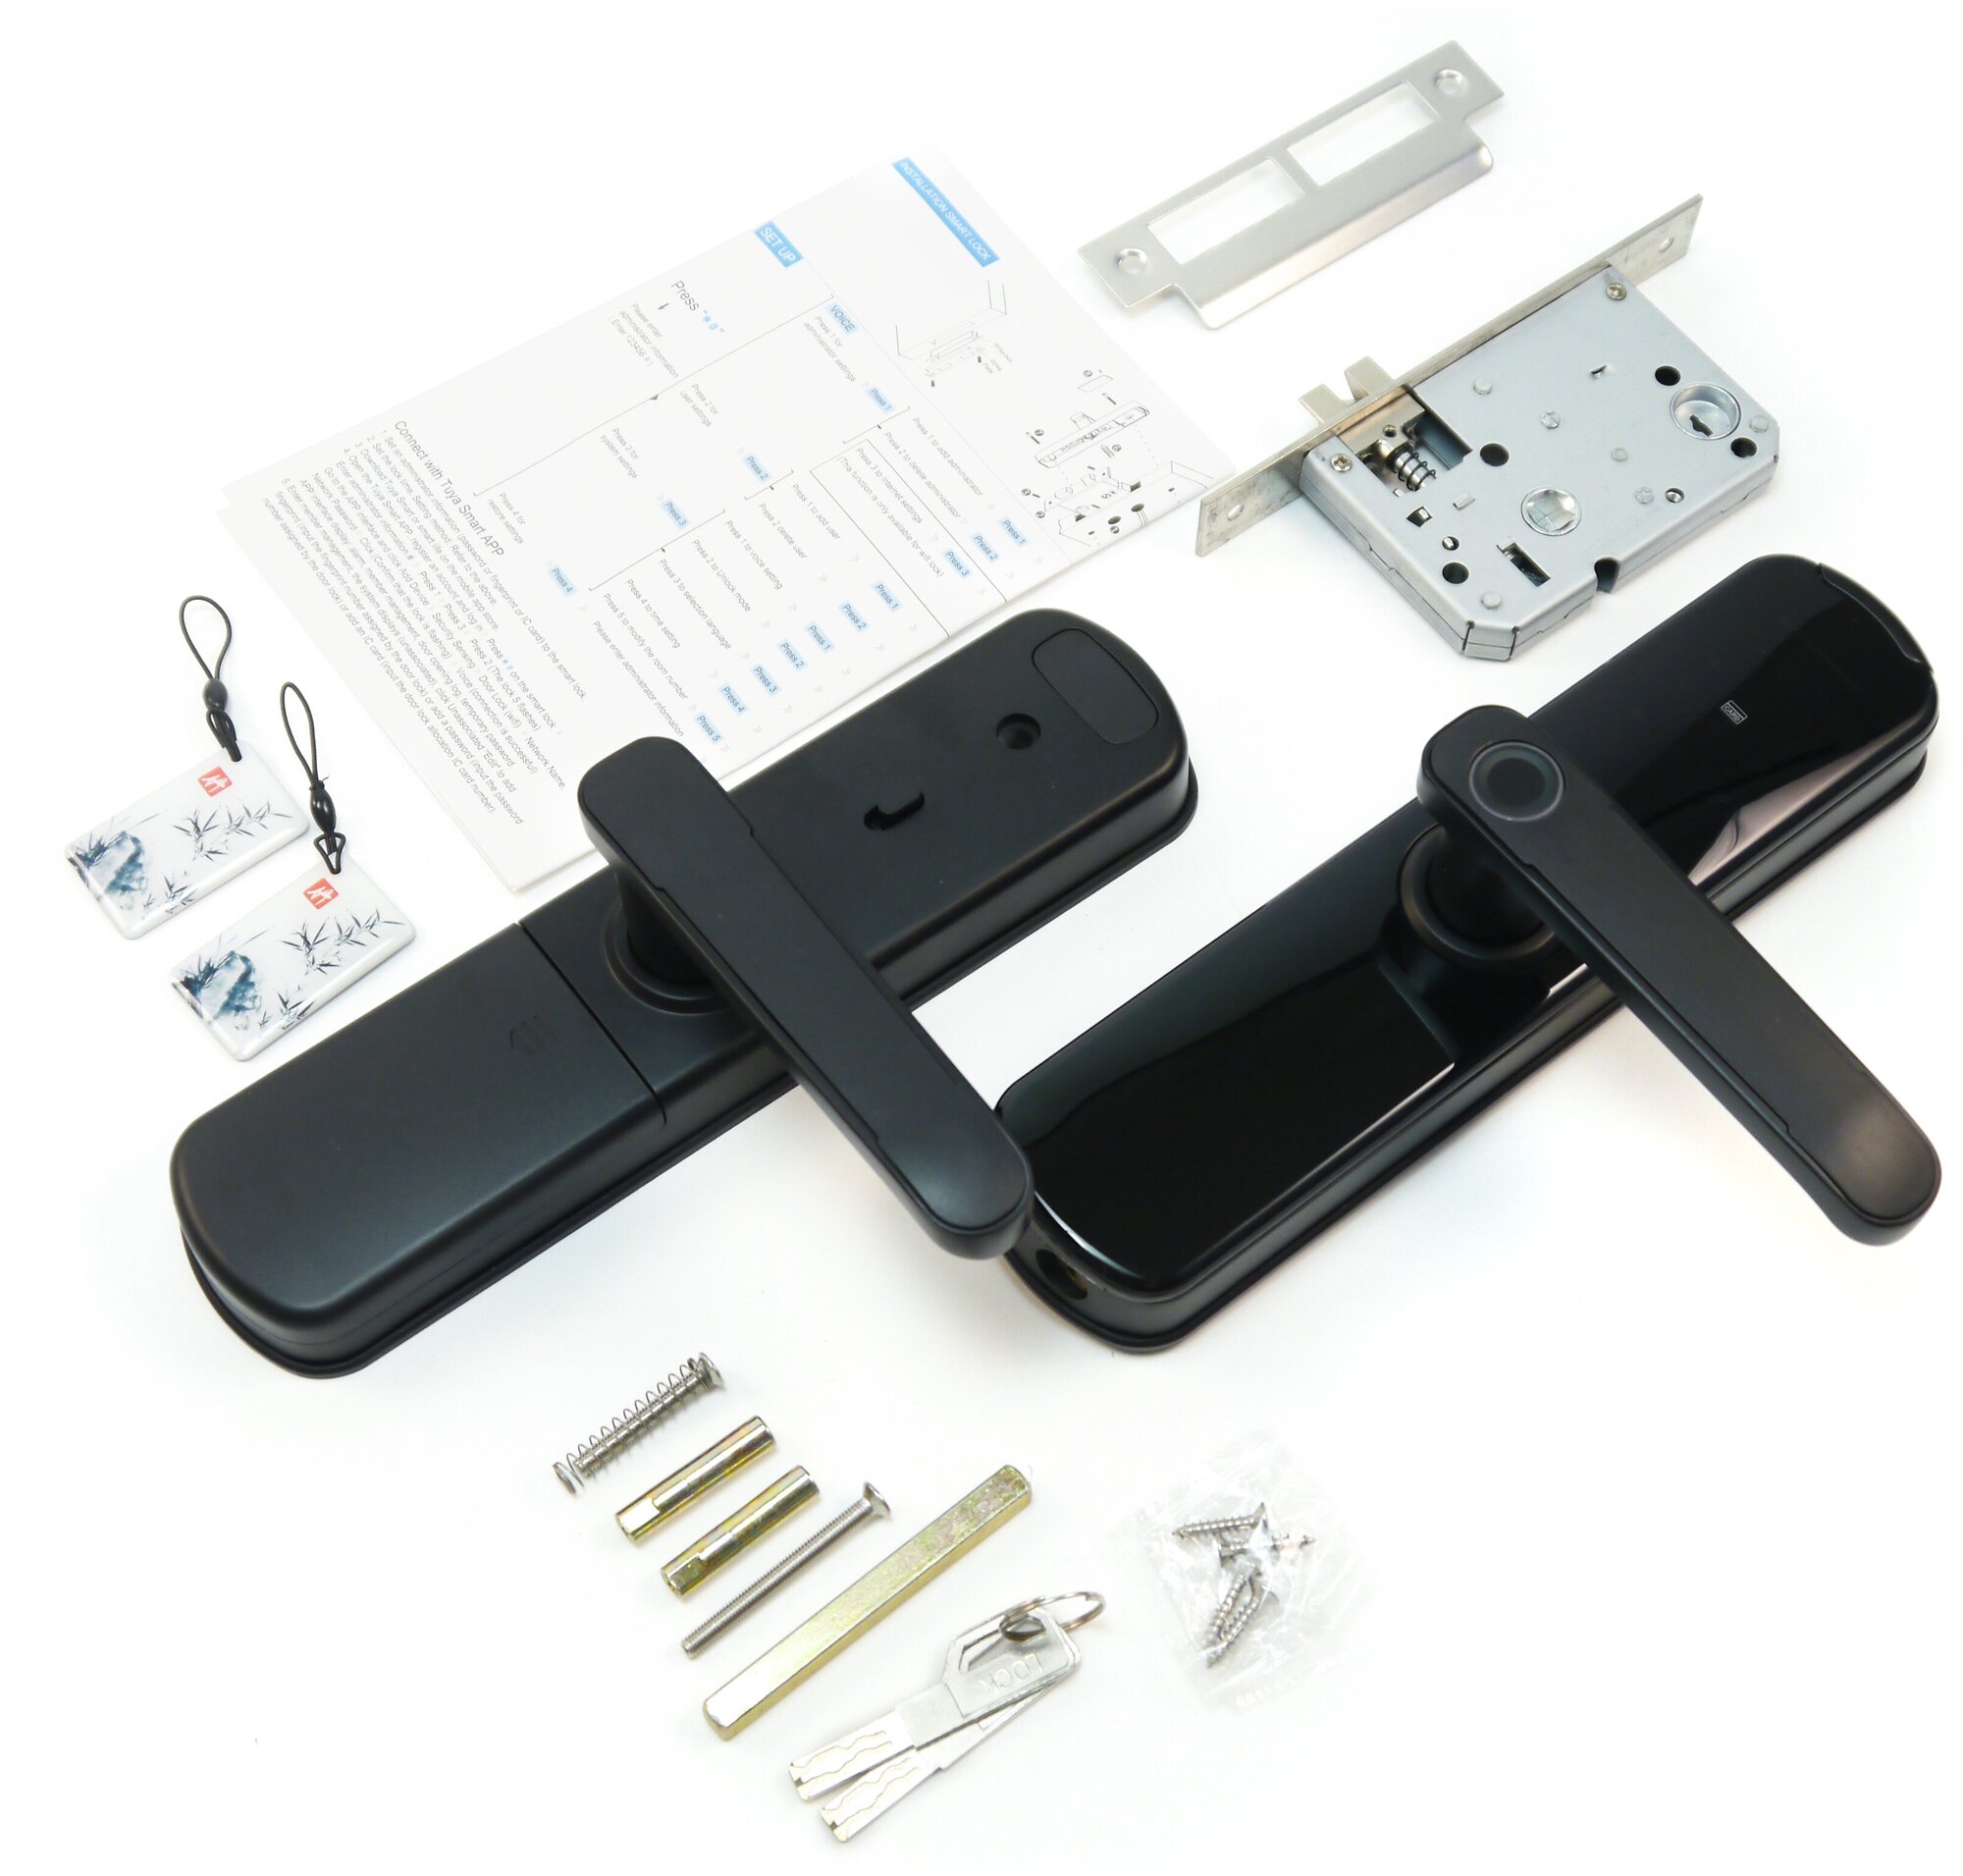 HDcom SL-807A Tuya-WiFi - биометрический Wi-Fi умный замок на входную дверь (биометрический сканера отпечатка пальца) в подарочной упаковке